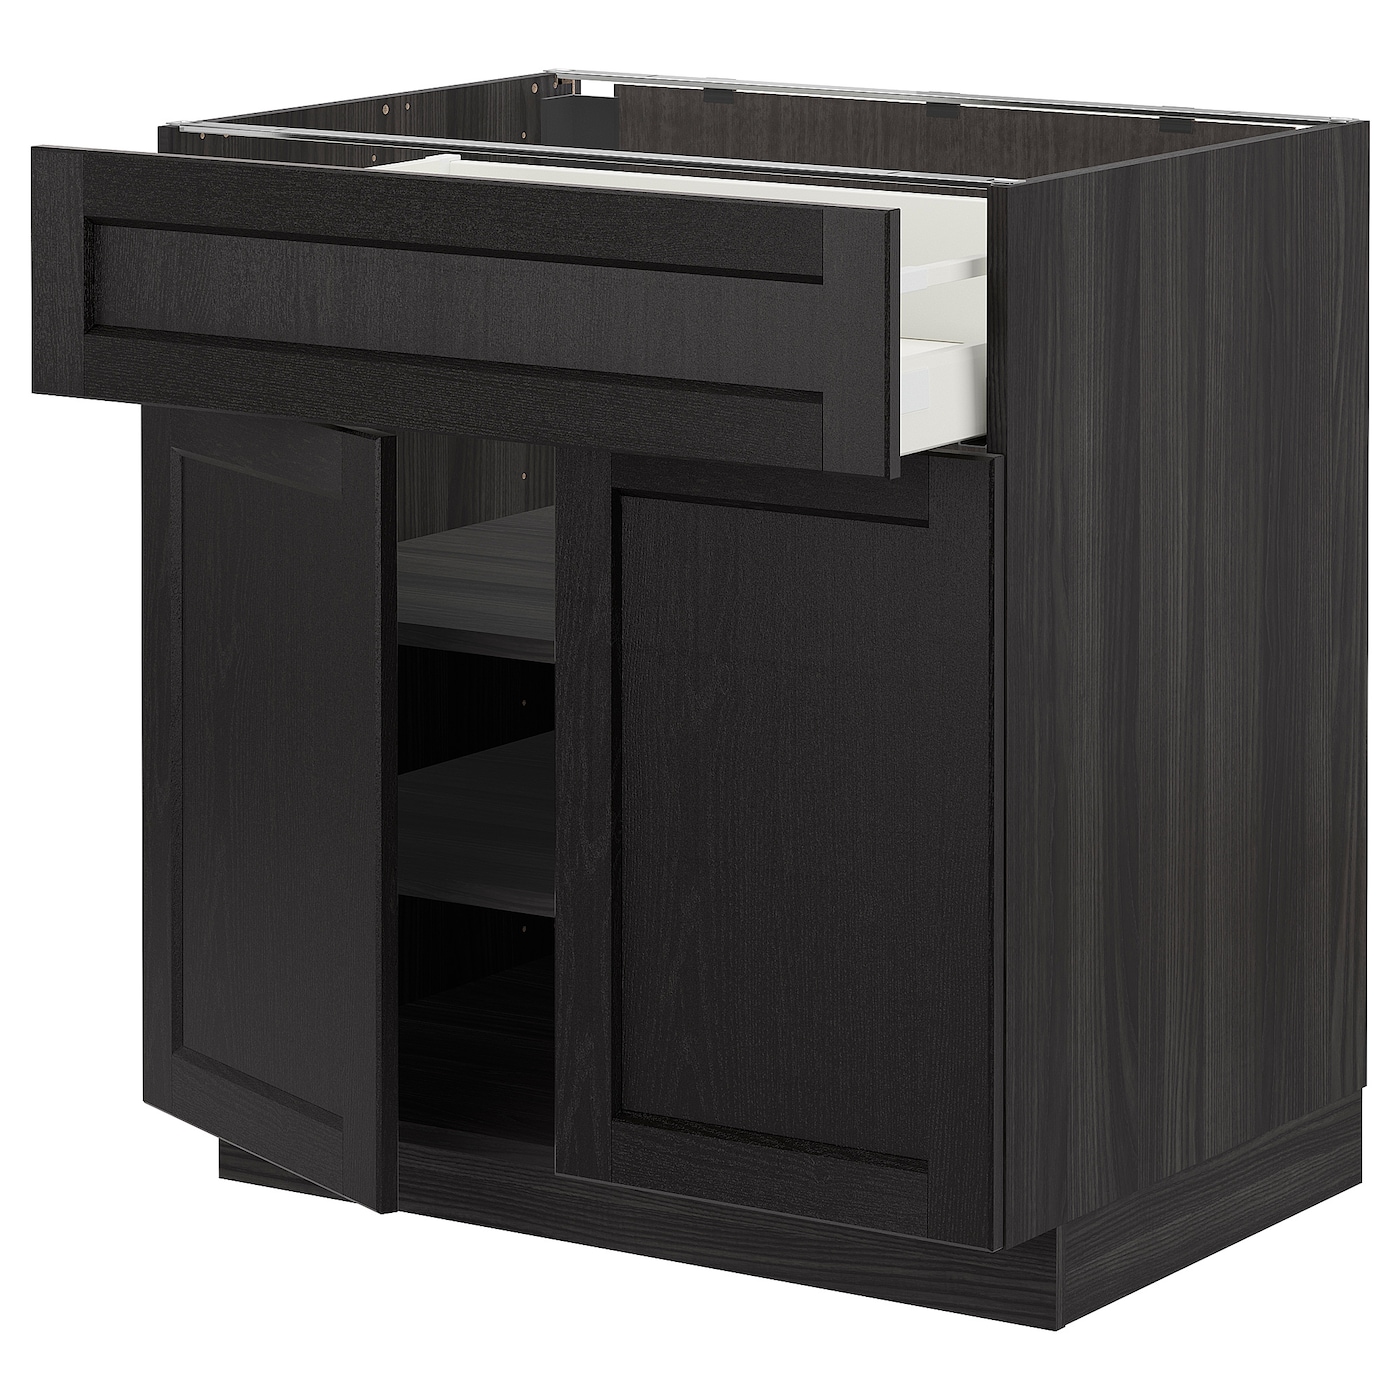 Напольный кухонный шкаф  - IKEA METOD MAXIMERA, 88x61,9x80см, черный, МЕТОД МАКСИМЕРА ИКЕА